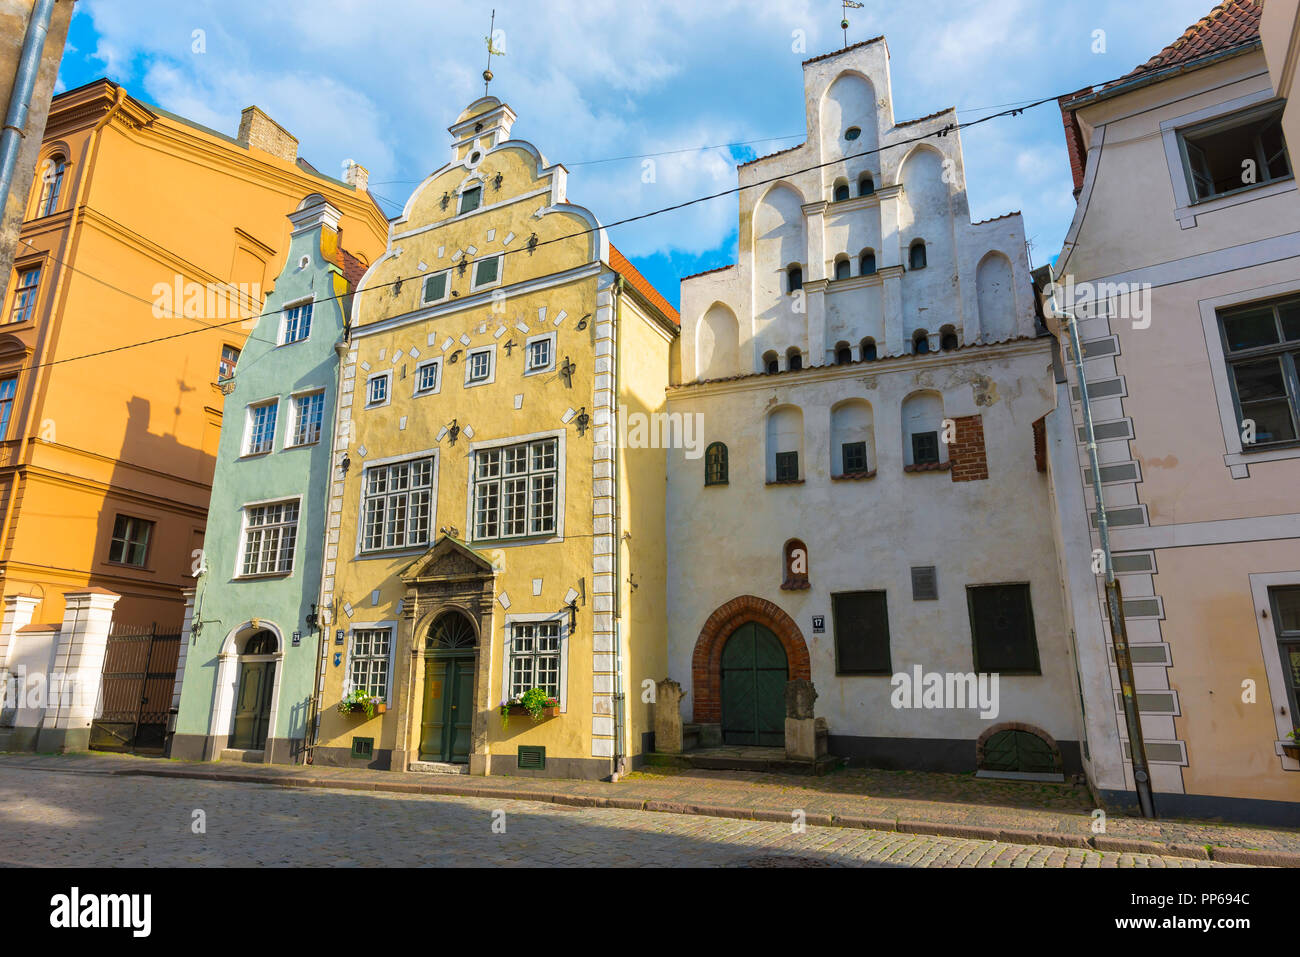 La vieille ville de Riga en Lettonie, en vue des Trois Frères bâtiments dans la vieille ville médiévale de Doma Laukums salon de la ville. Numéro 17 est la plus ancienne maison de Riga. Banque D'Images